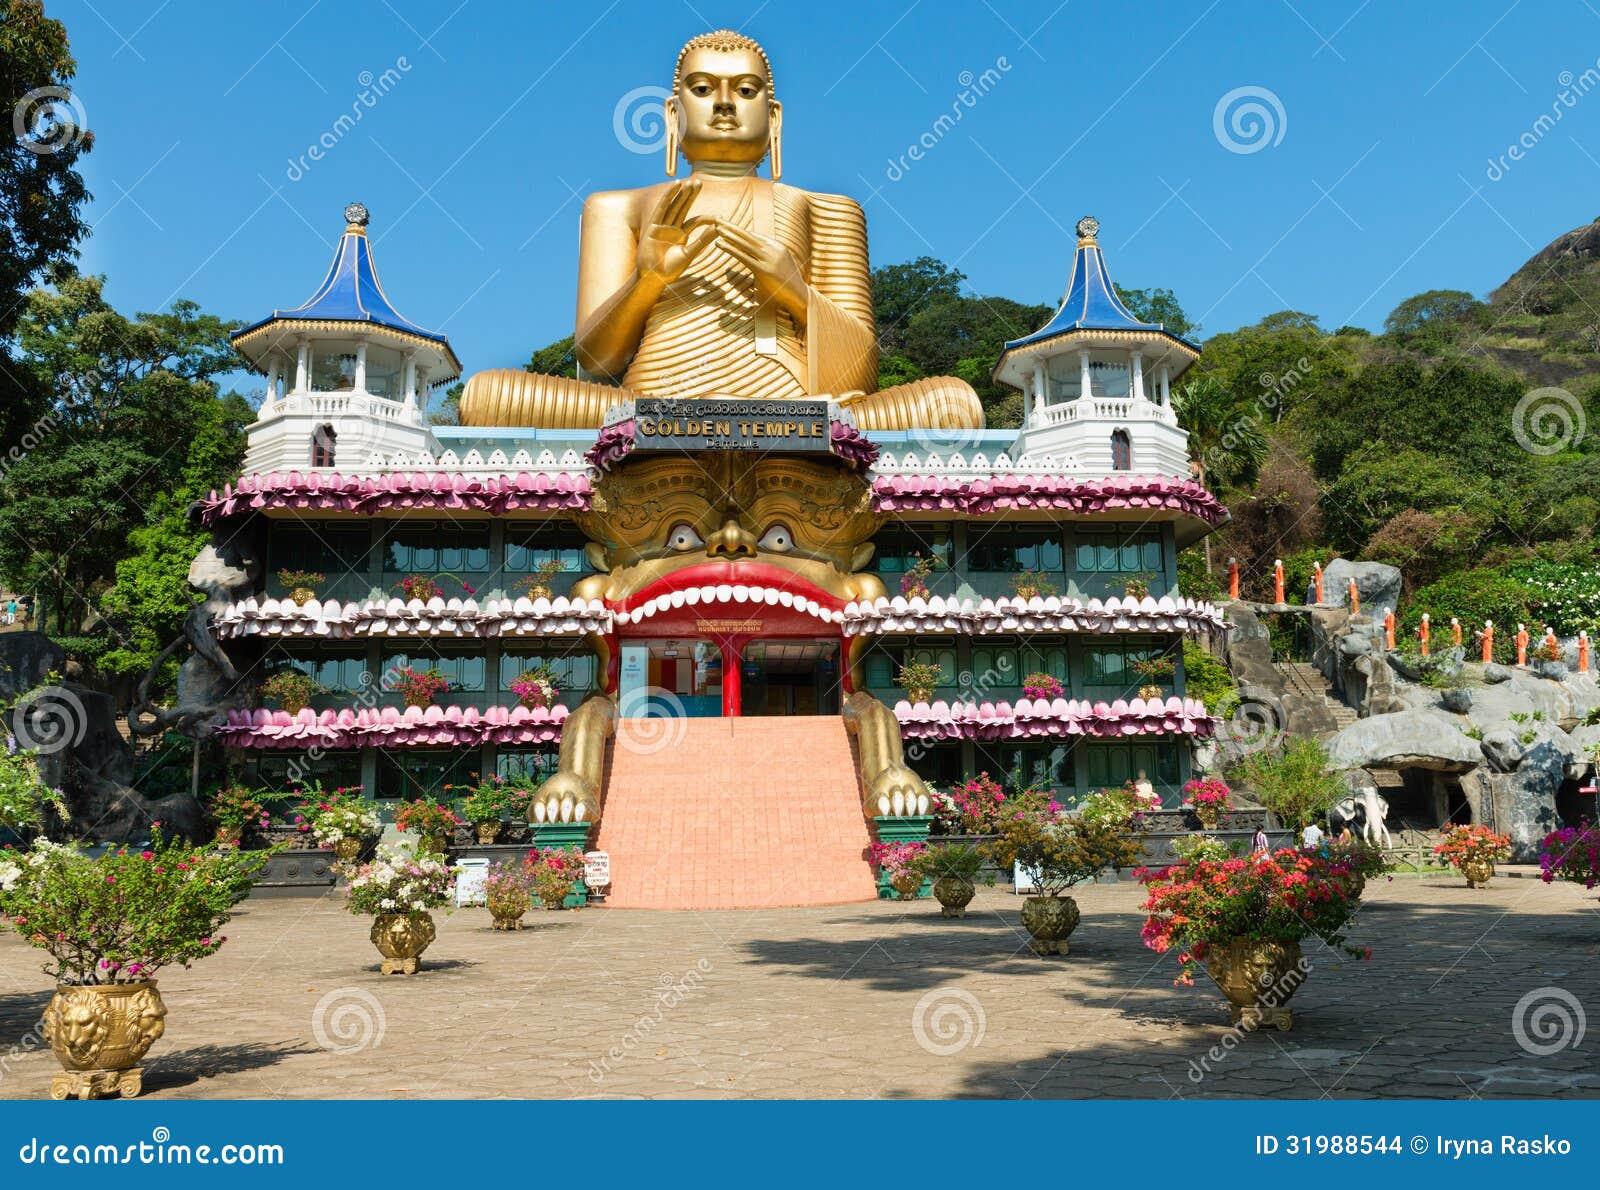 golden temple of dambulla, sri lanka